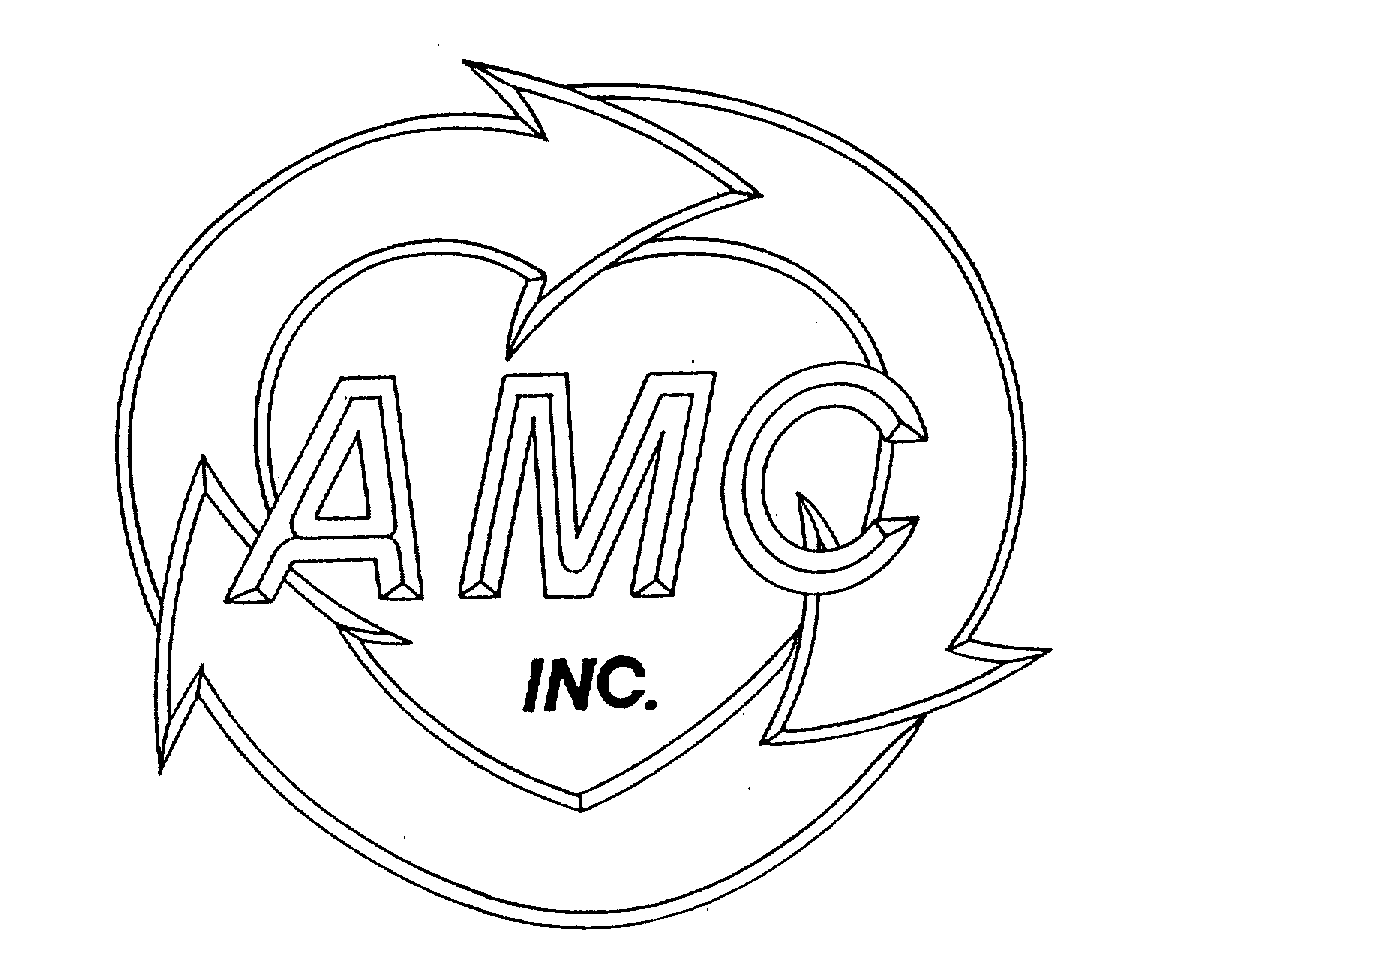  AMC INC.